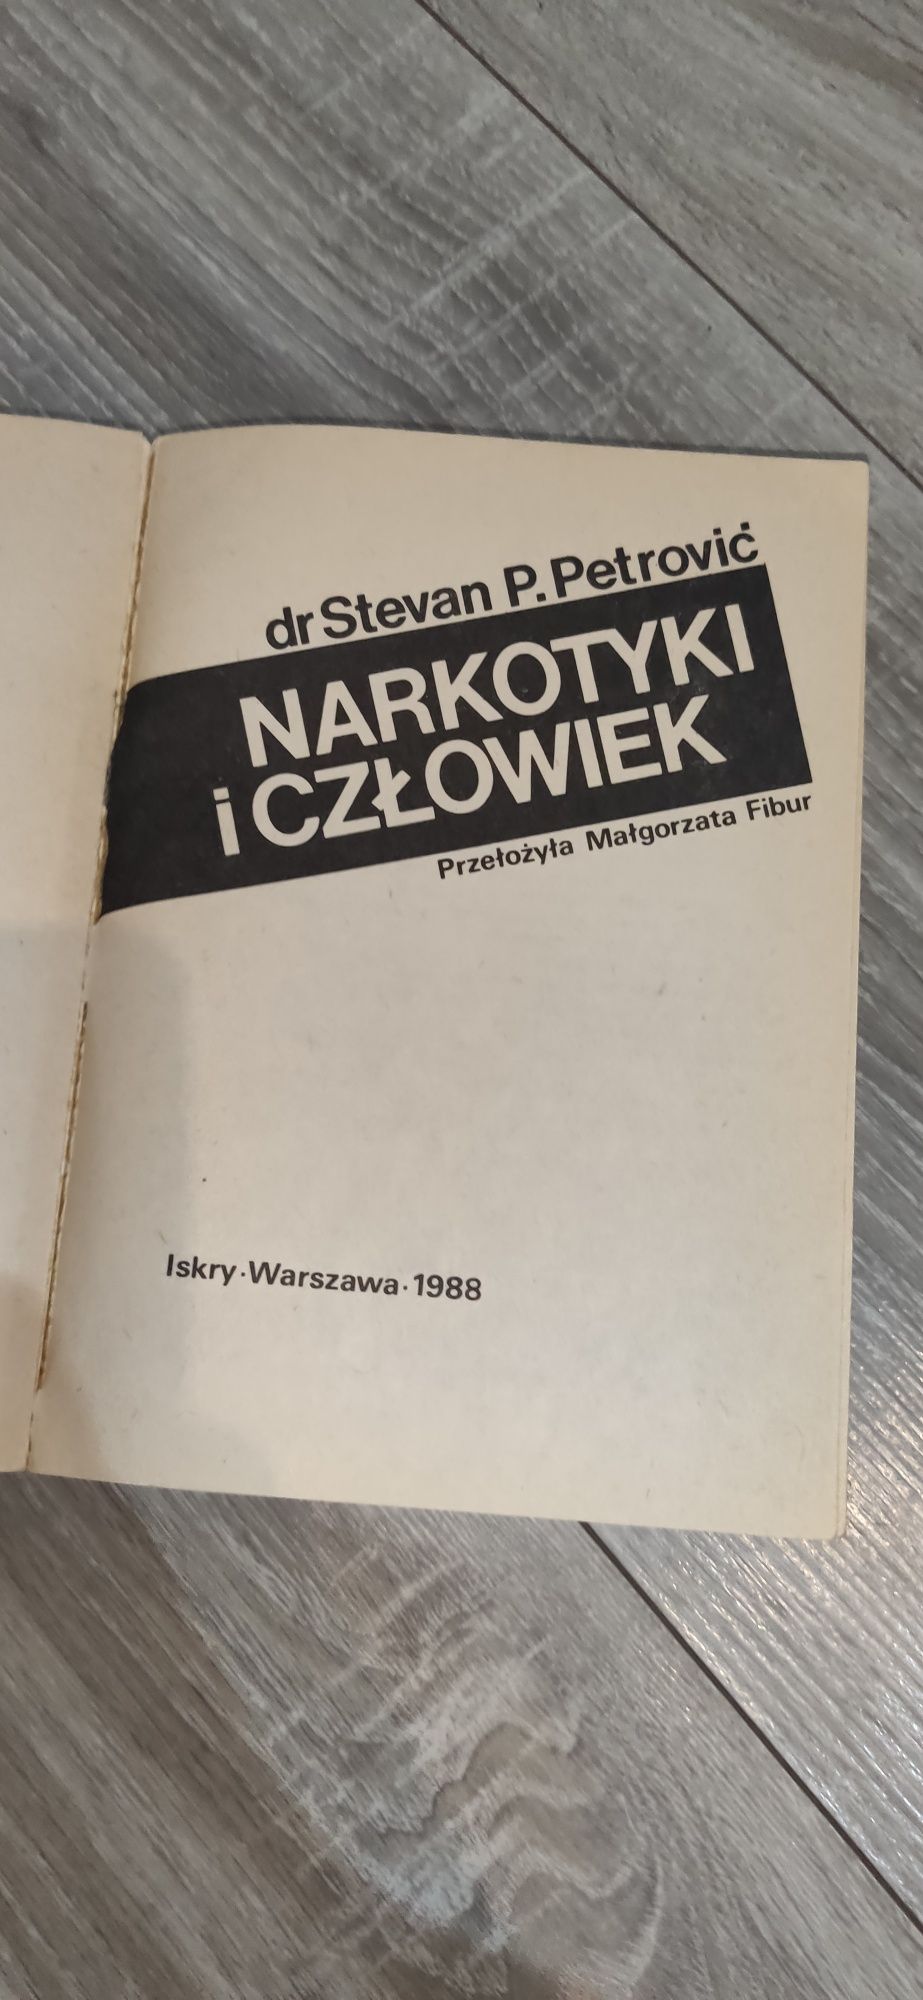 Książka Narkotyki i człowiek dr dr Stevan P. Petrovič
Narkotyki i czło